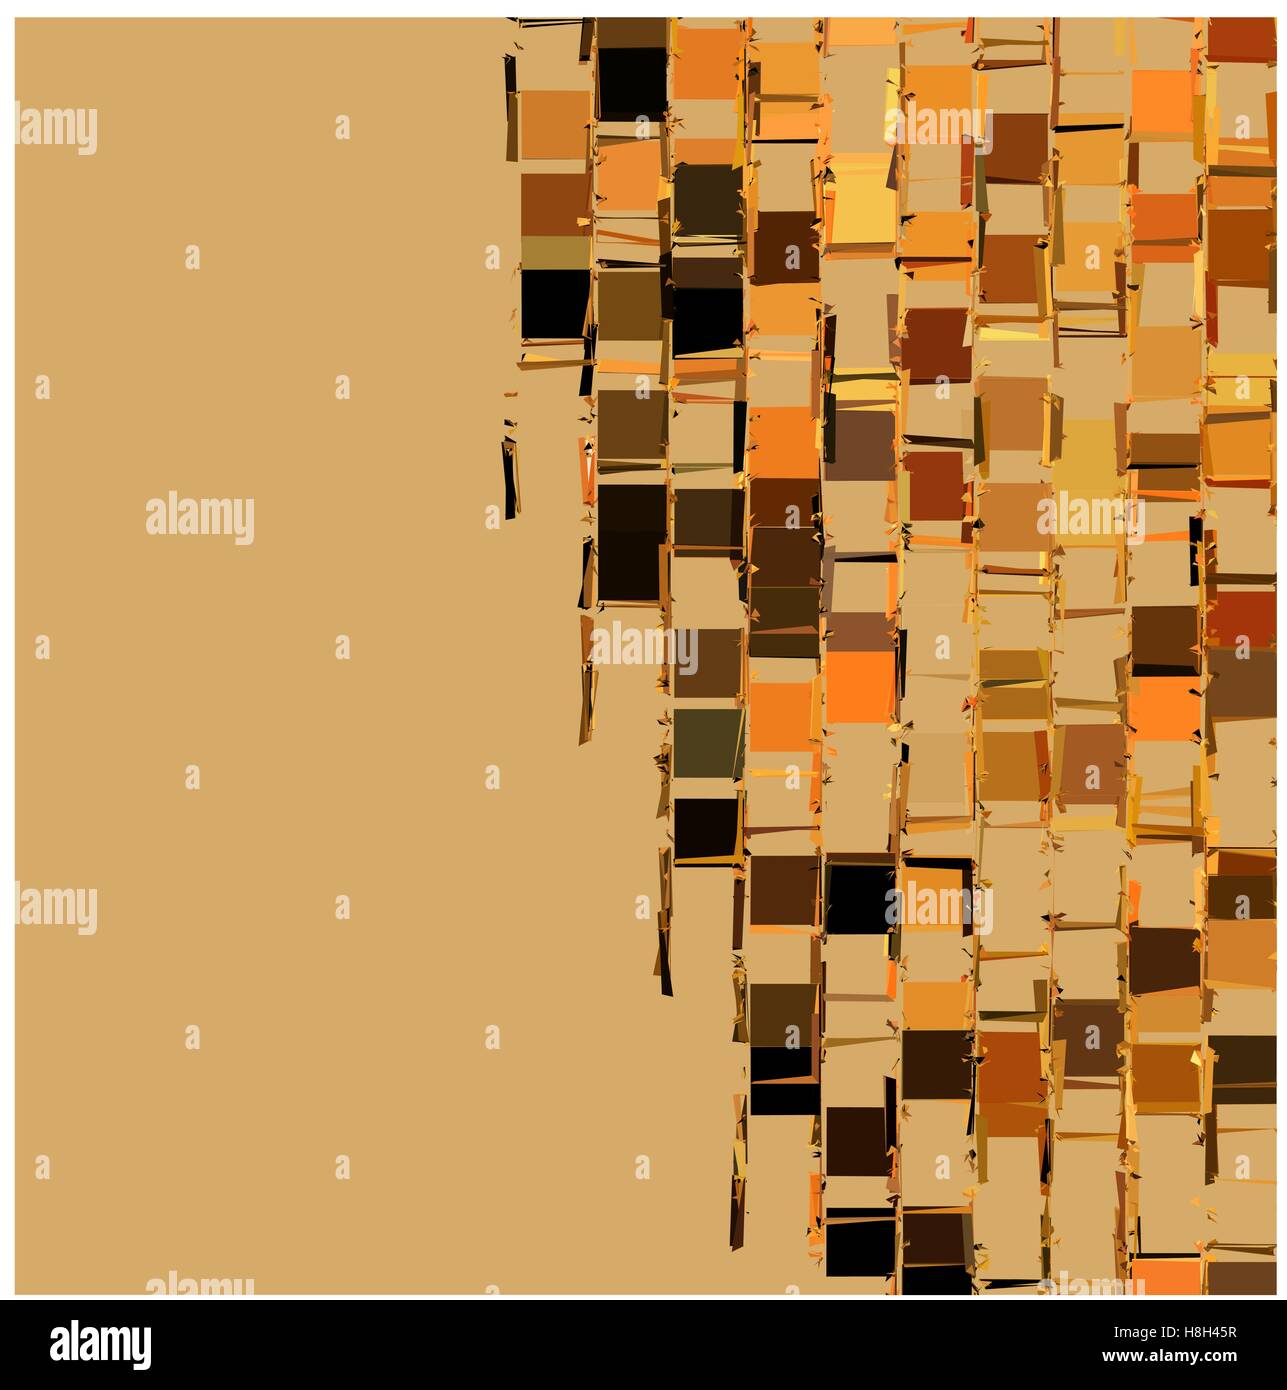 Fragmentado abstracto como telón de fondo plano en color beige naranja Ilustración del Vector